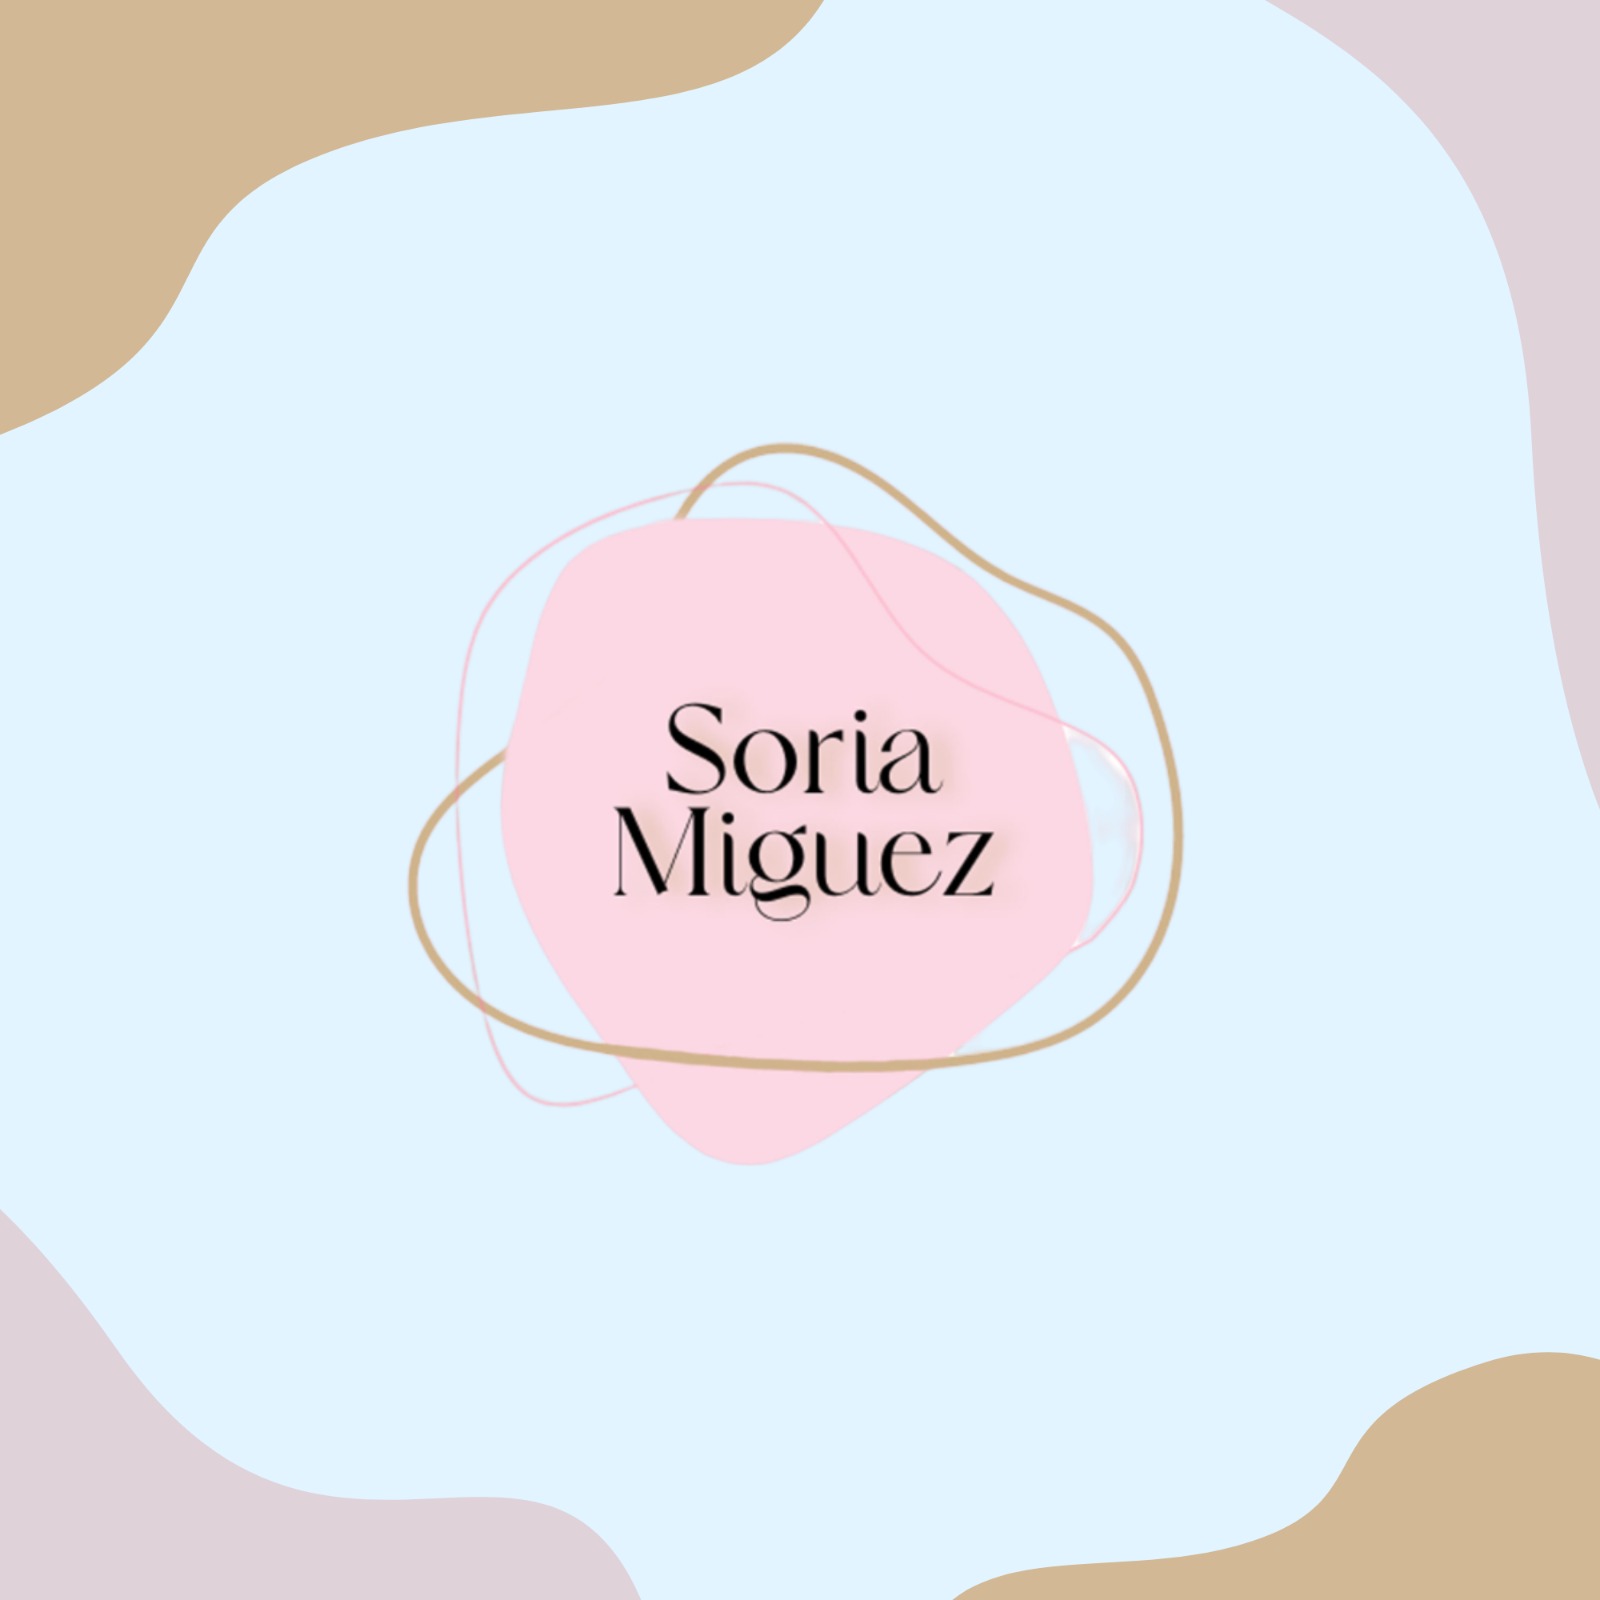 Soria Miguez